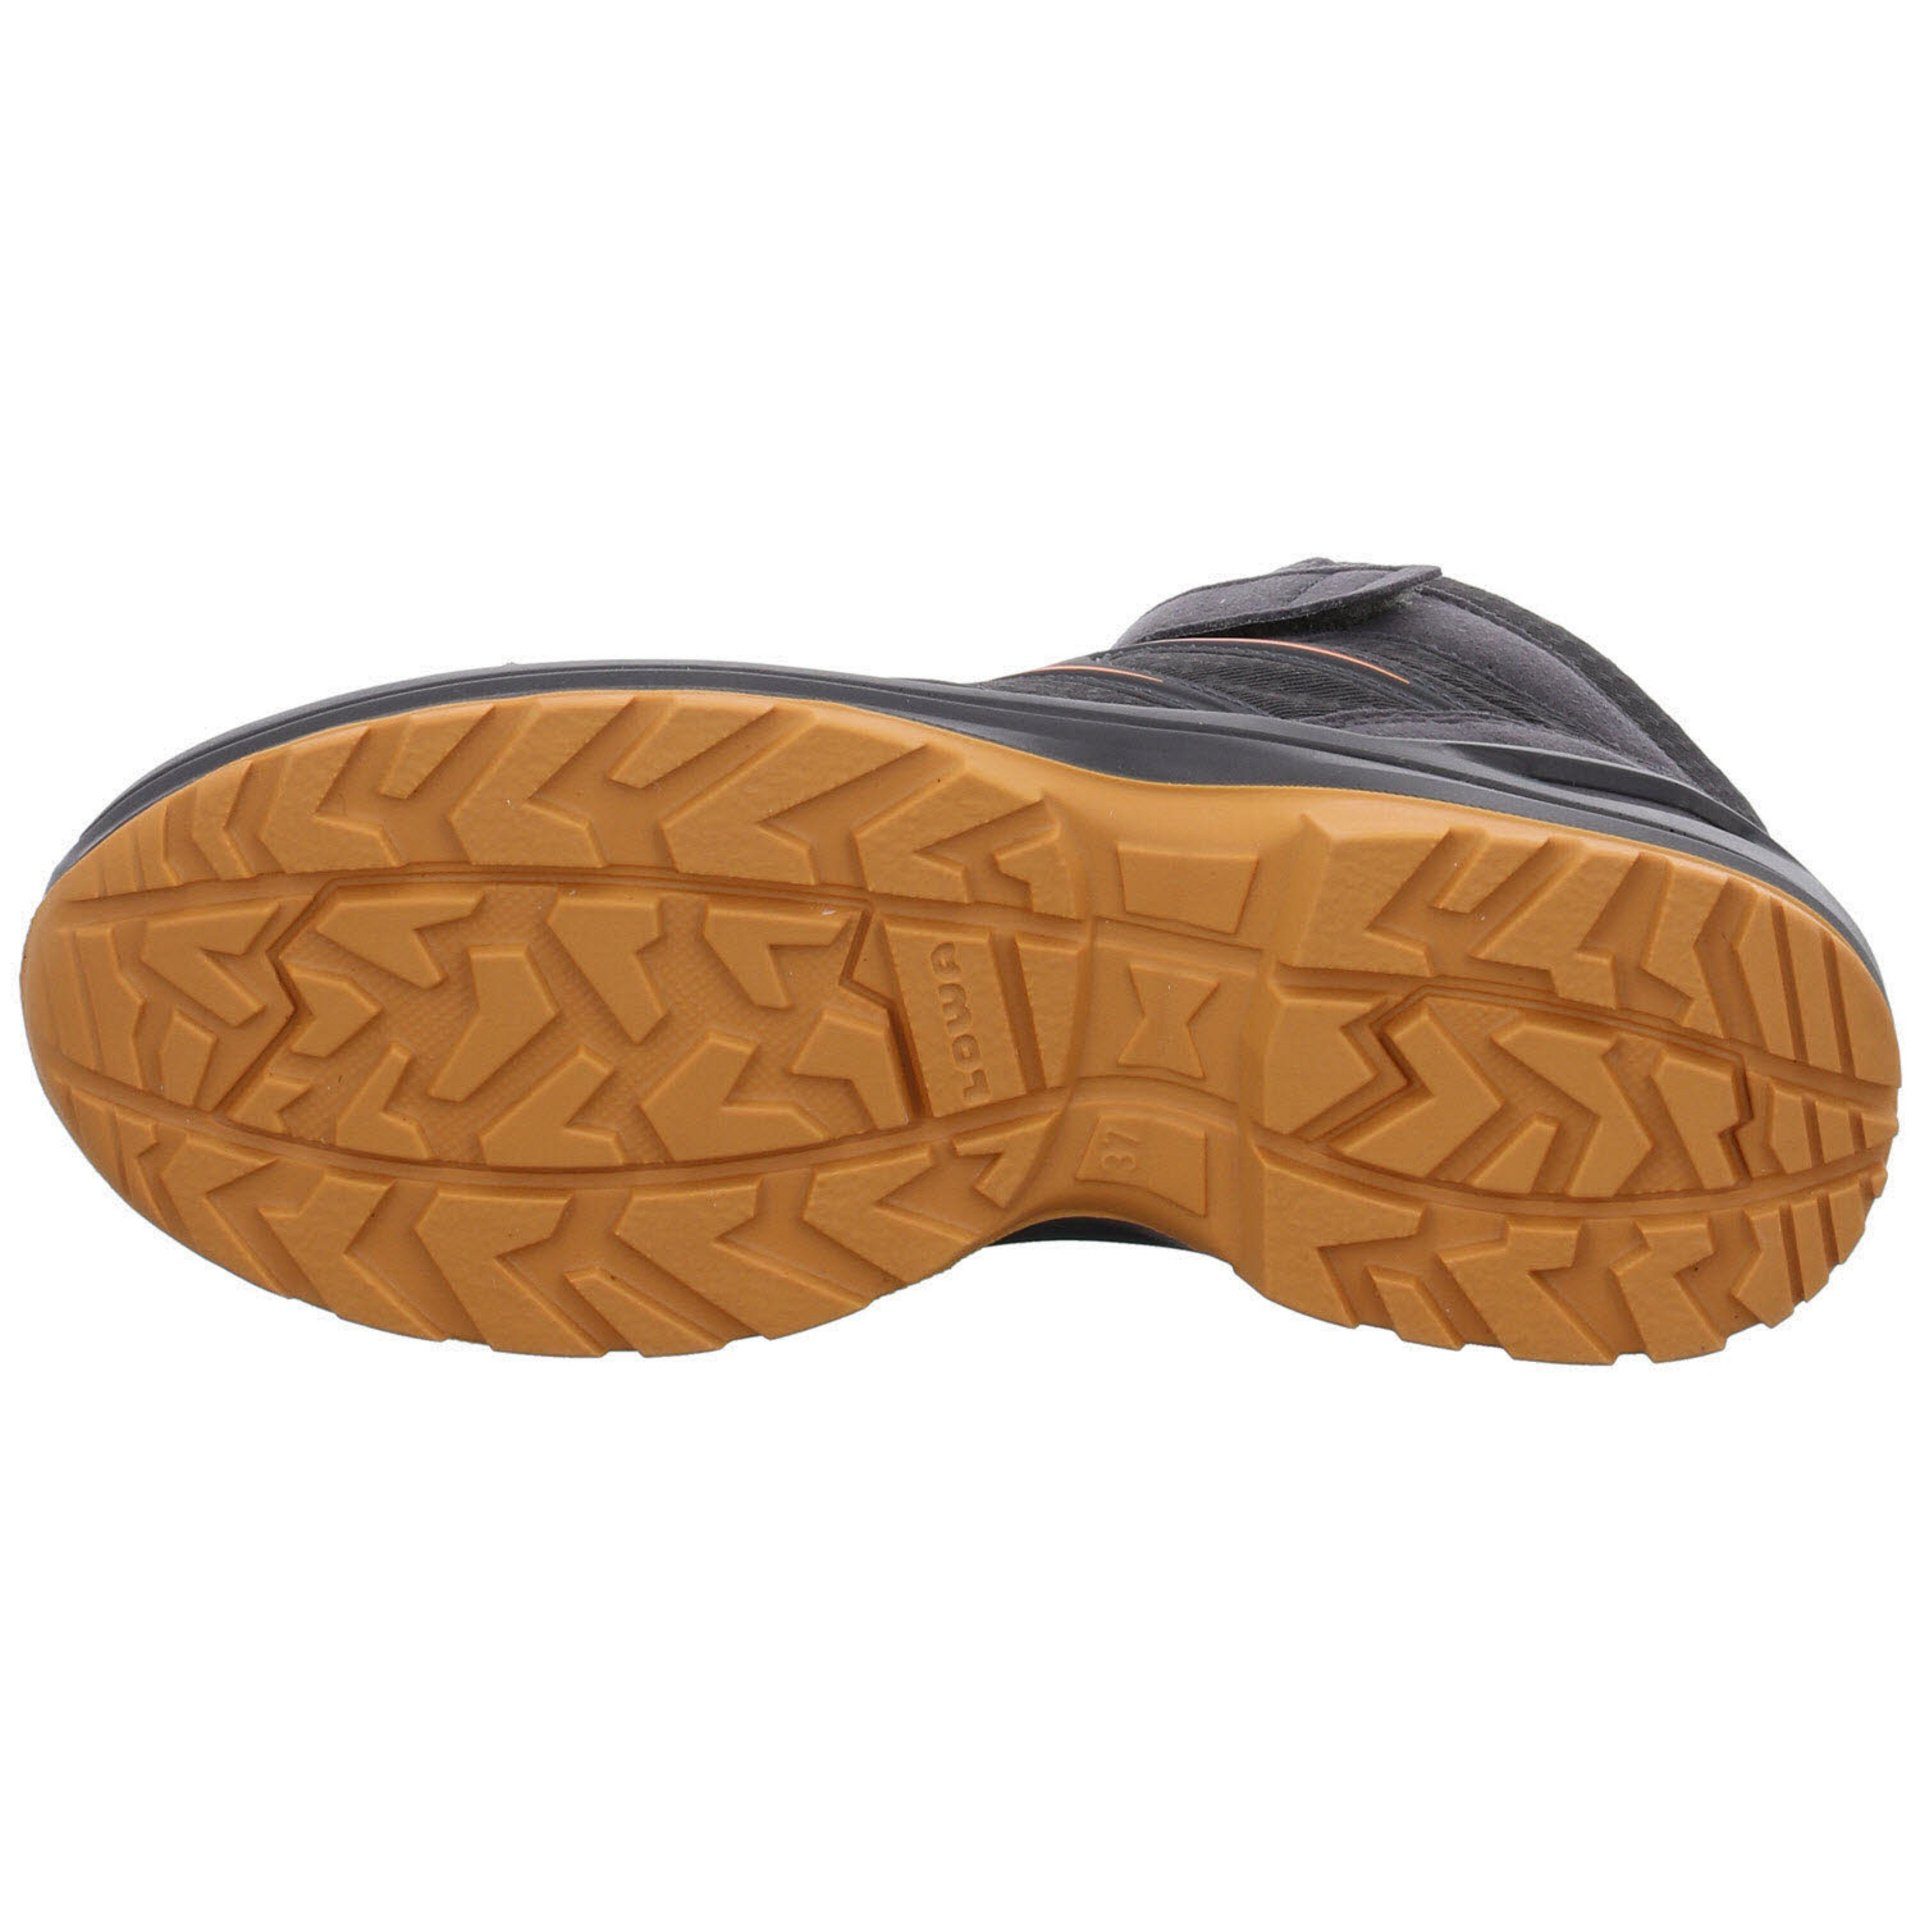 GTX Maddox Stiefel GRAPHIT/MANDARINE Lowa Boots Textil Jungen Stiefel Warm Schuhe